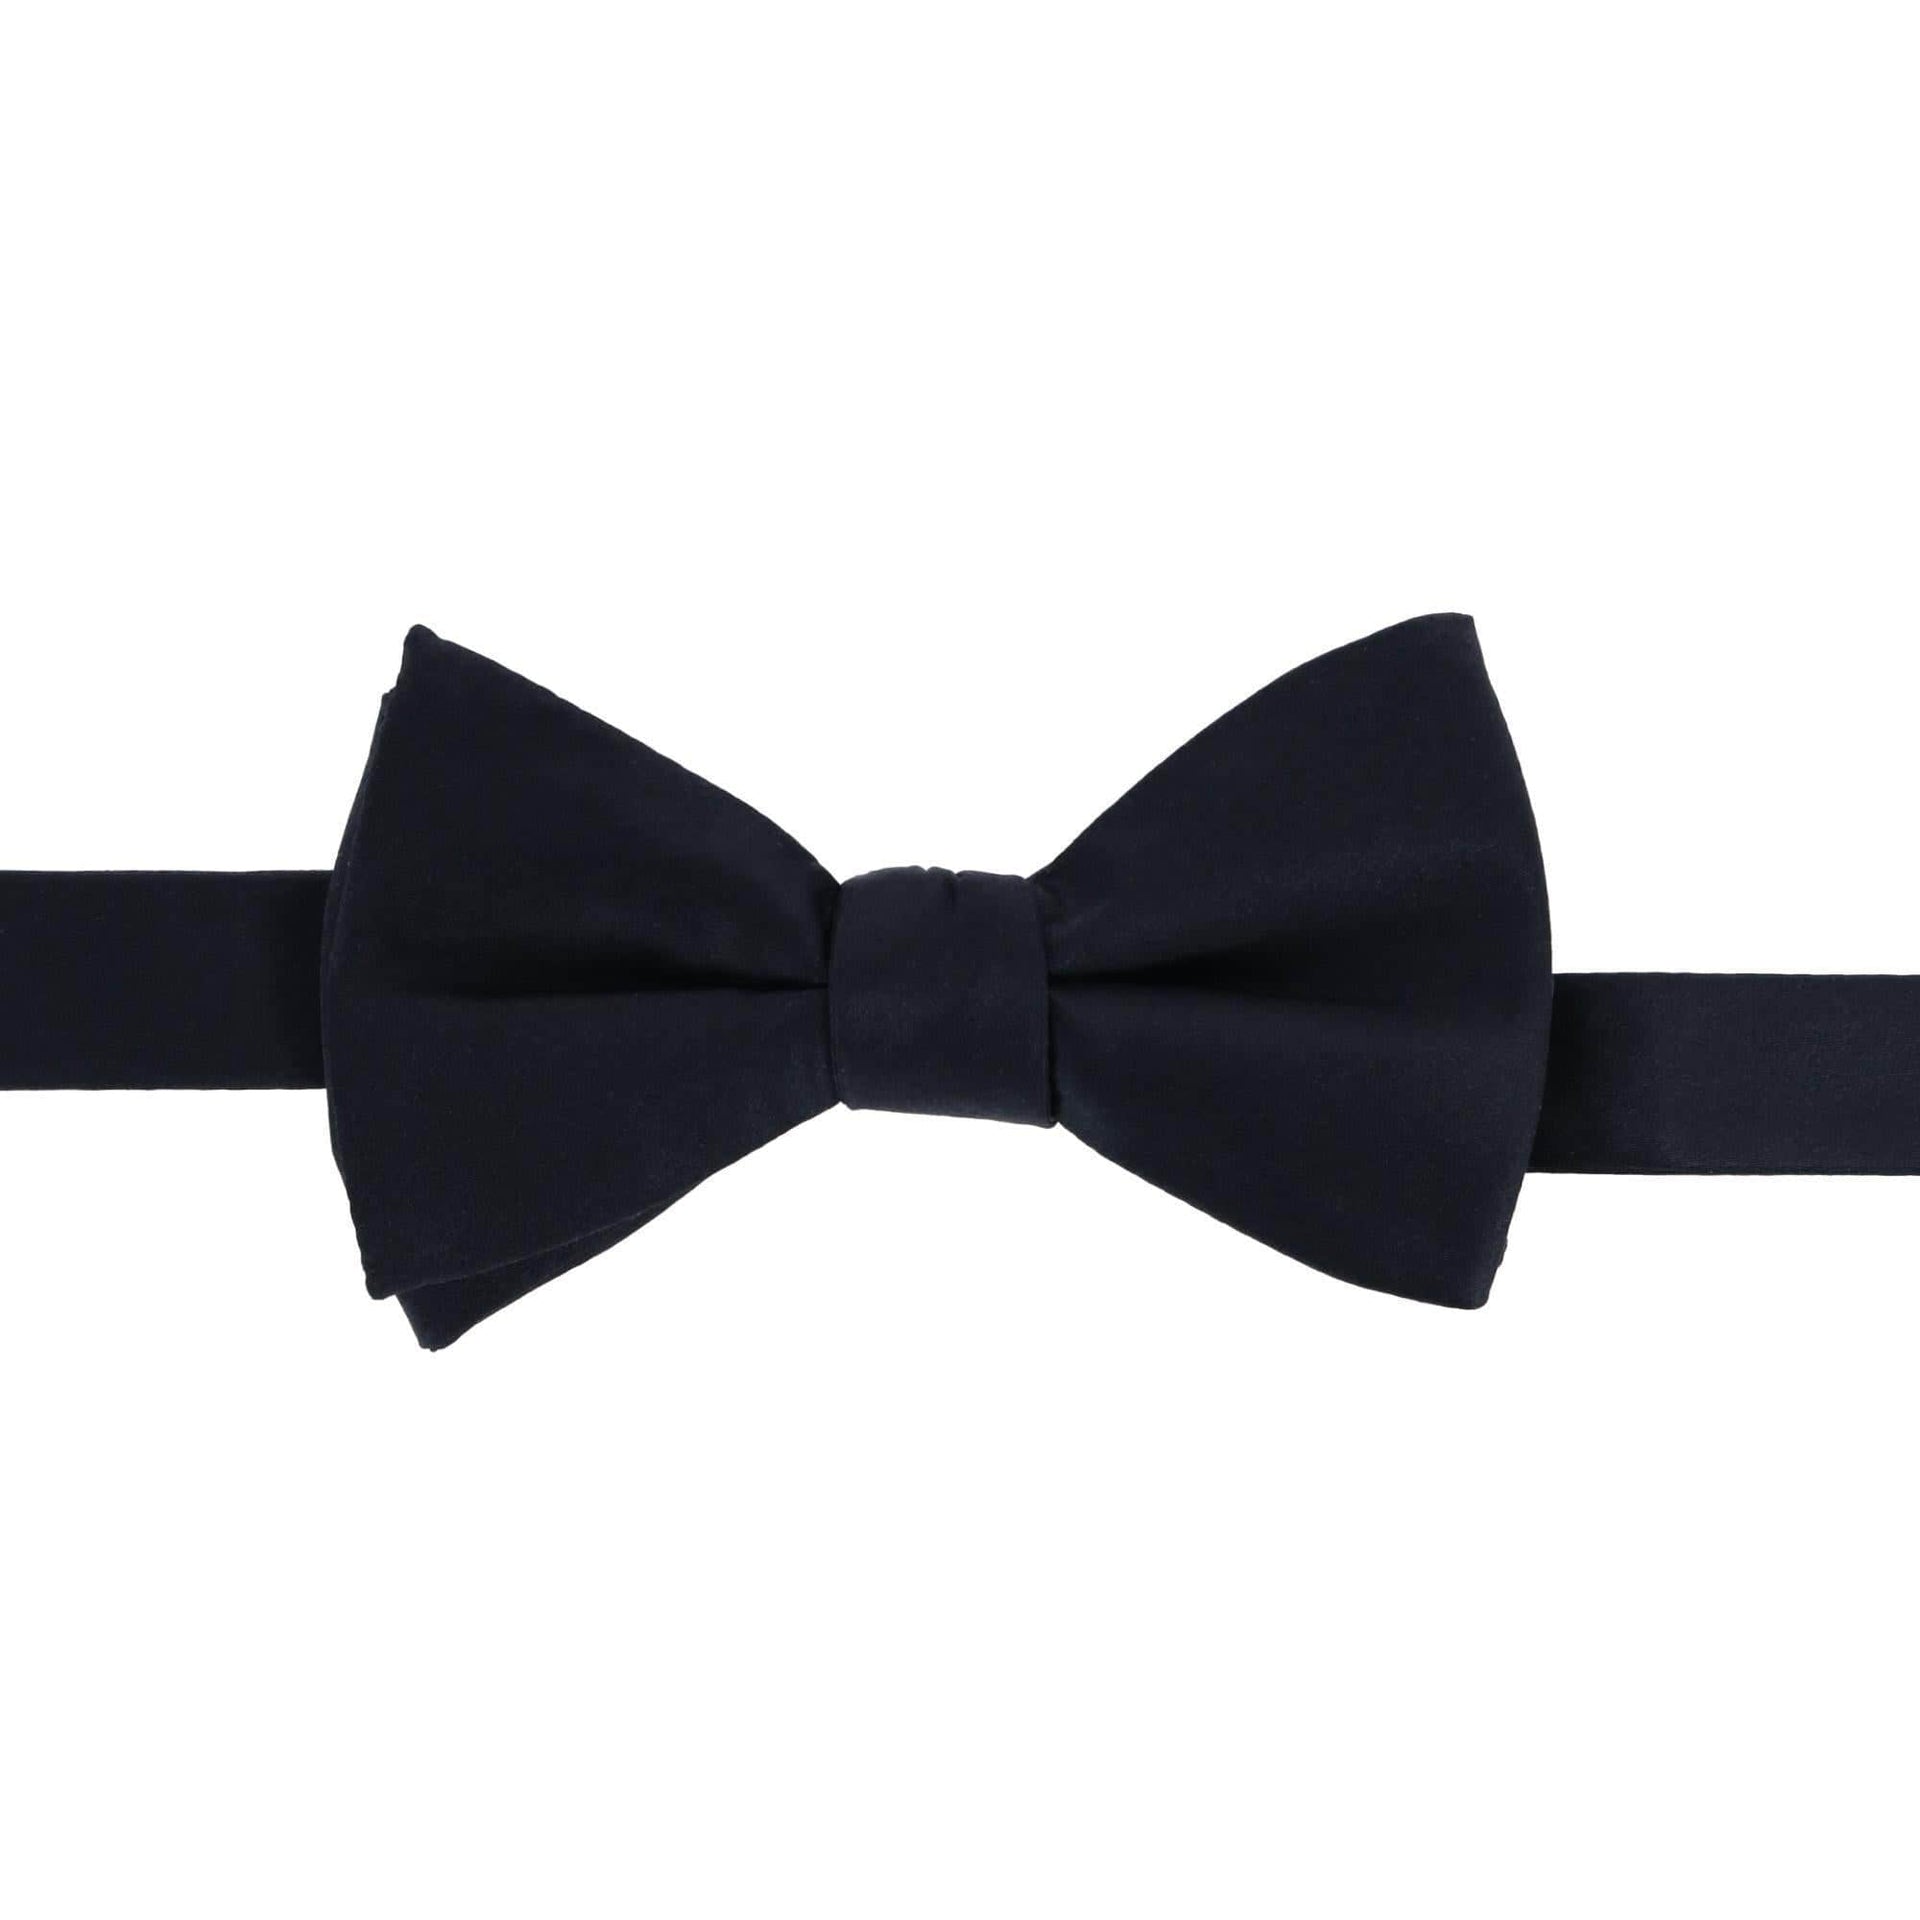 Sutton Solid Color Silk Bow Tie by Trafalgar Men's Accessories